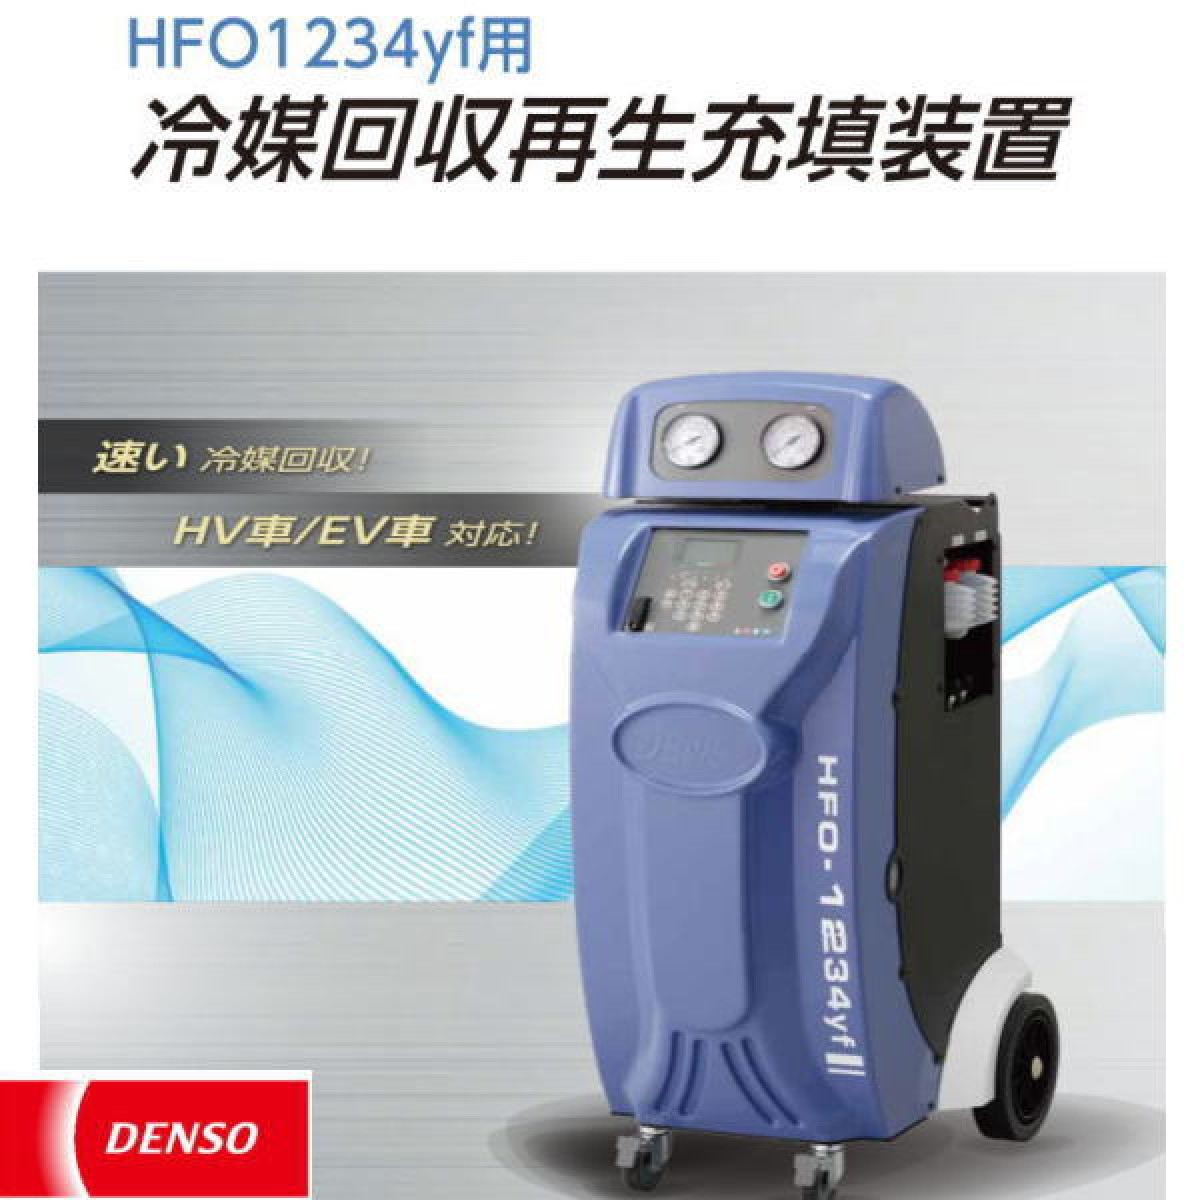 専用冷媒再生回収充填装置（プリンター付きモデル）新ガス DENSO製HFO1234yf - 上越電装株式会社